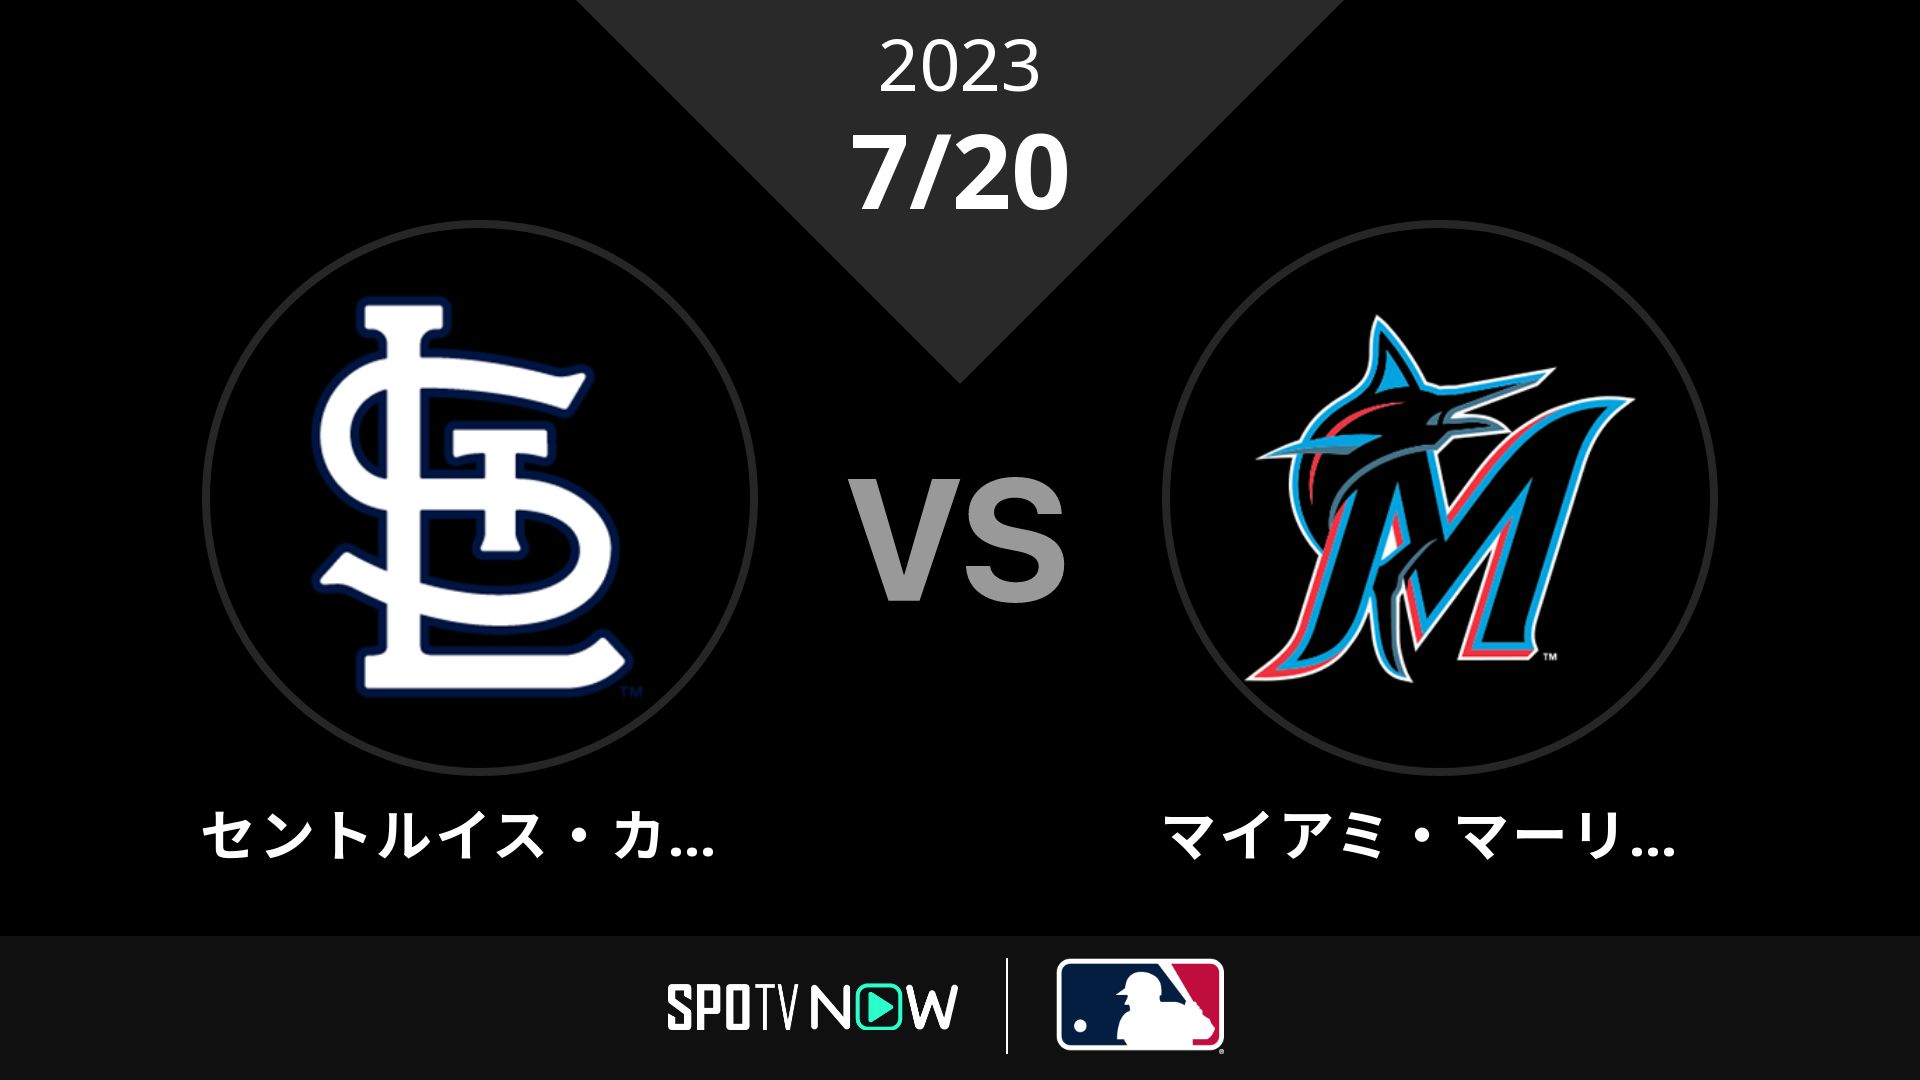 2023/7/20 カージナルス vs マーリンズ [MLB]